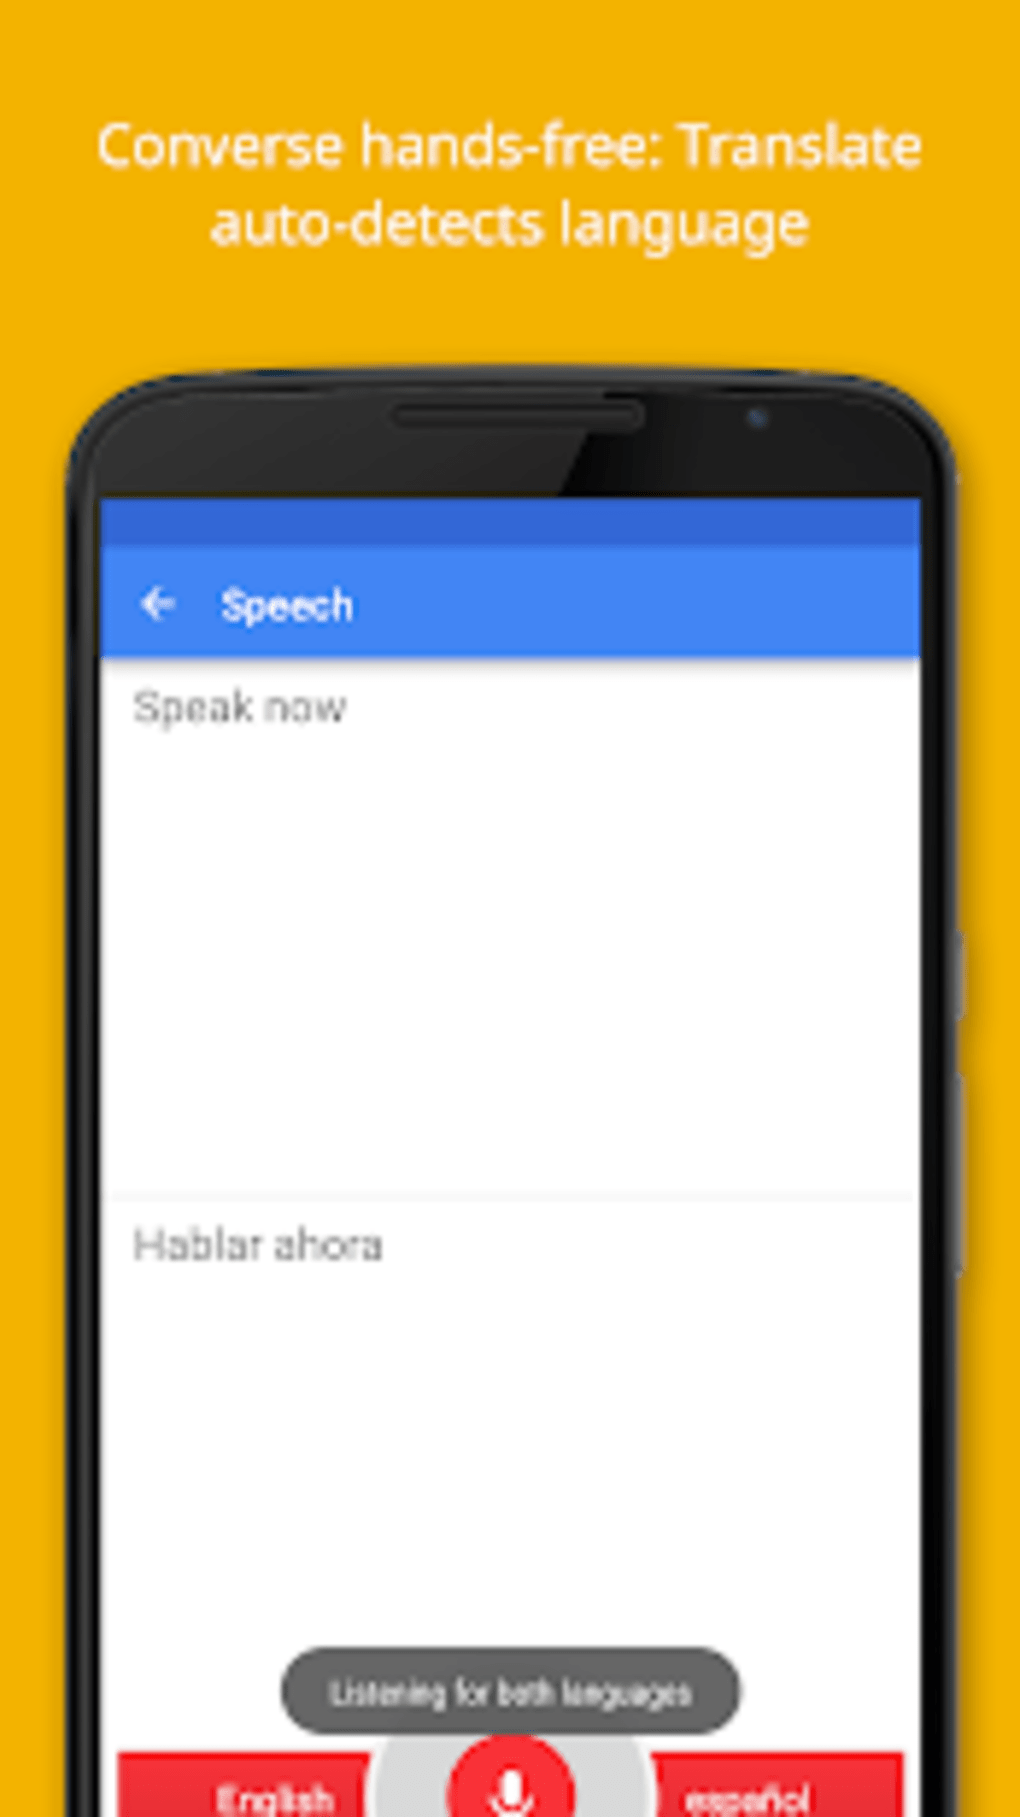 Novo Google Tradutor para Android faz traduções offline